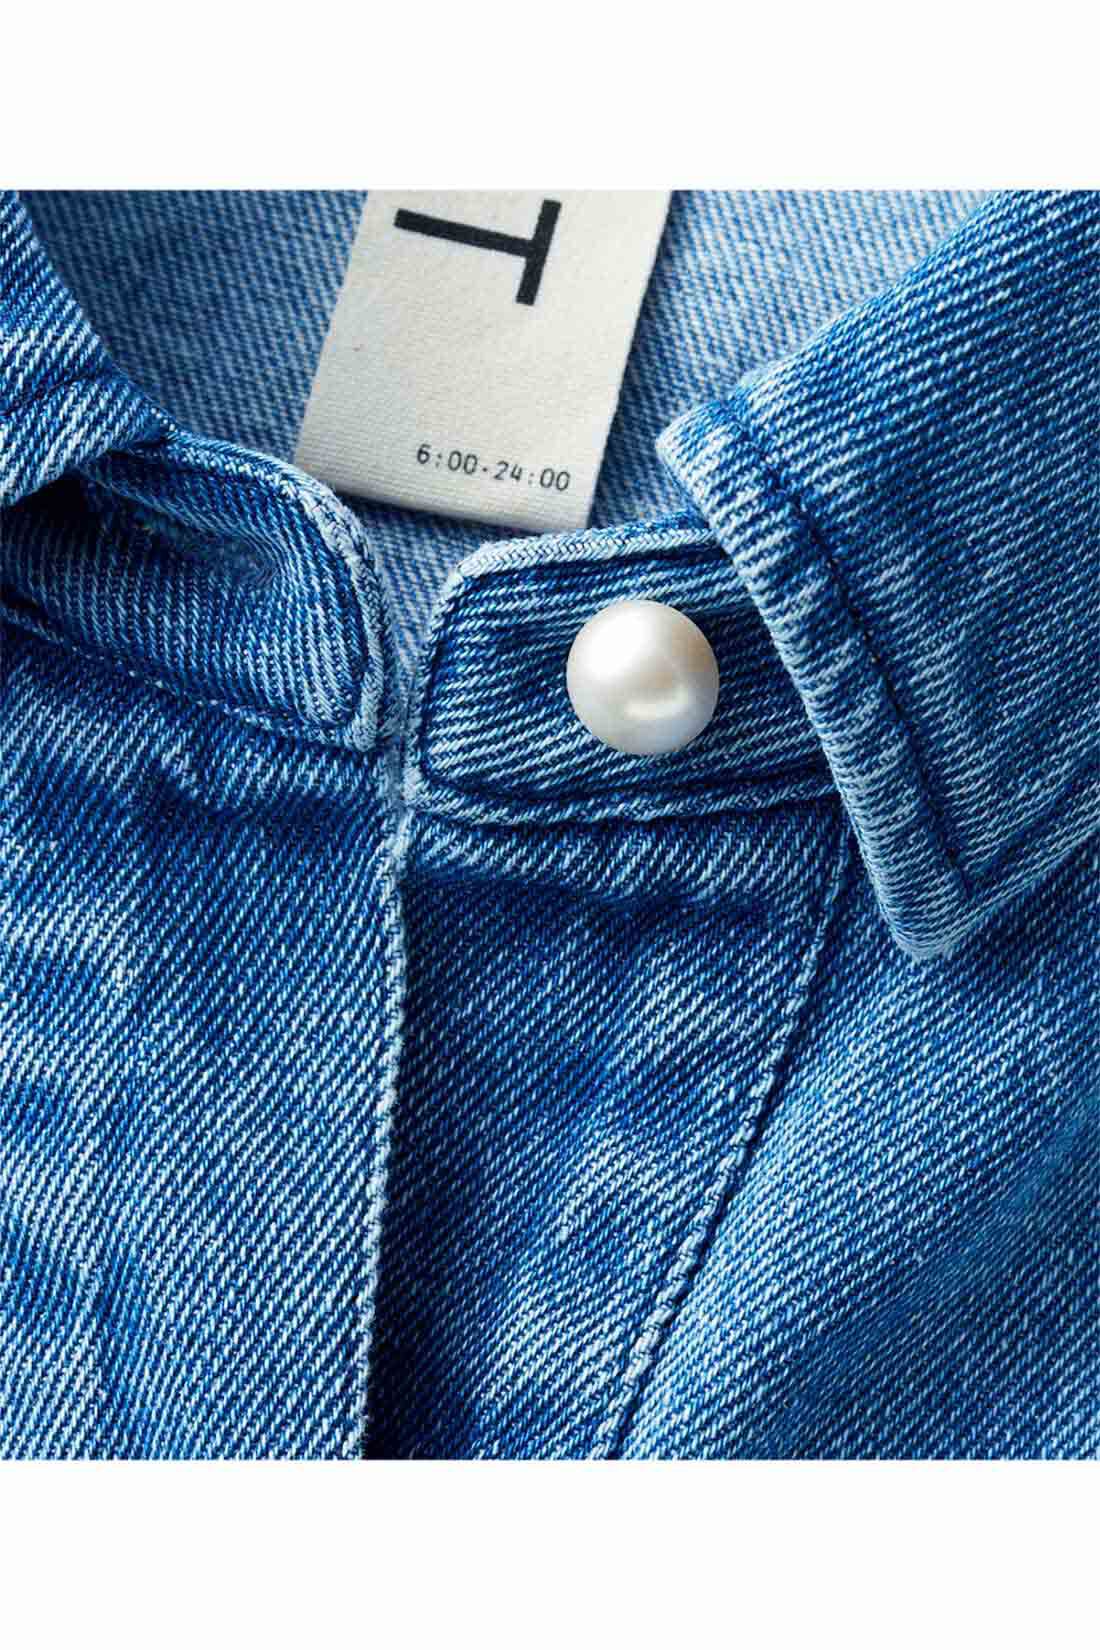 IEDIT|IEDIT[イディット]　シャツ以上アウター未満のパール調ボタンのこなれオーバーサイズシャツ|前立てや袖口で輝くパールボタンがつやっと女っぽい表情。